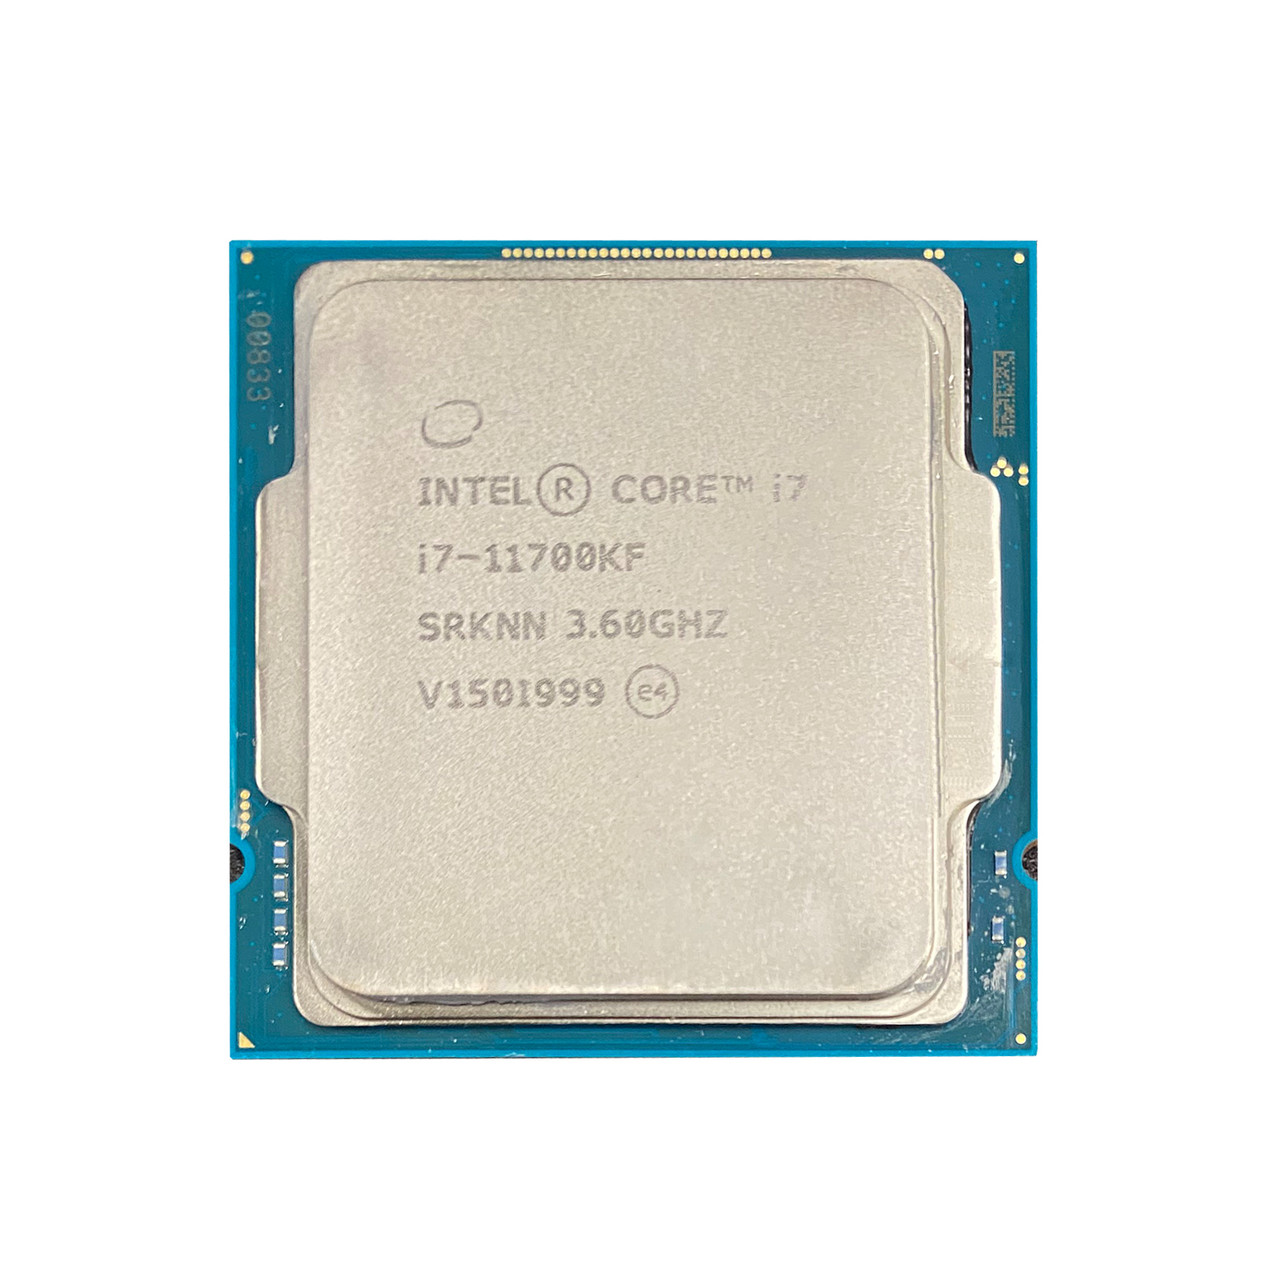 Intel SRKNN Core i7-11700KF 8C 3.6GHz 16MB 8GTs Processor